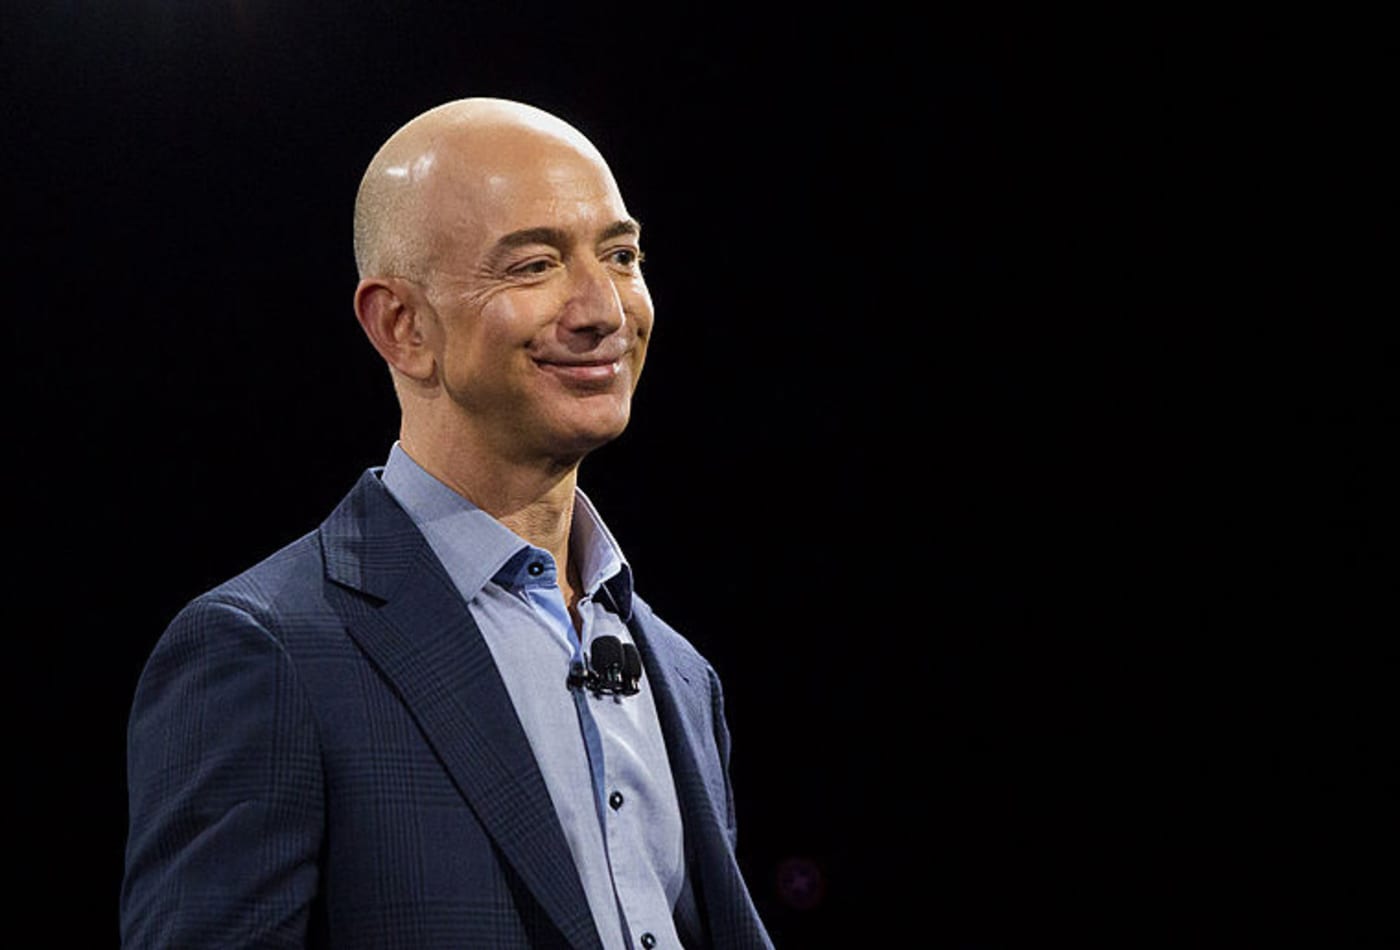 Jeff Bezos hakkında bilgiler